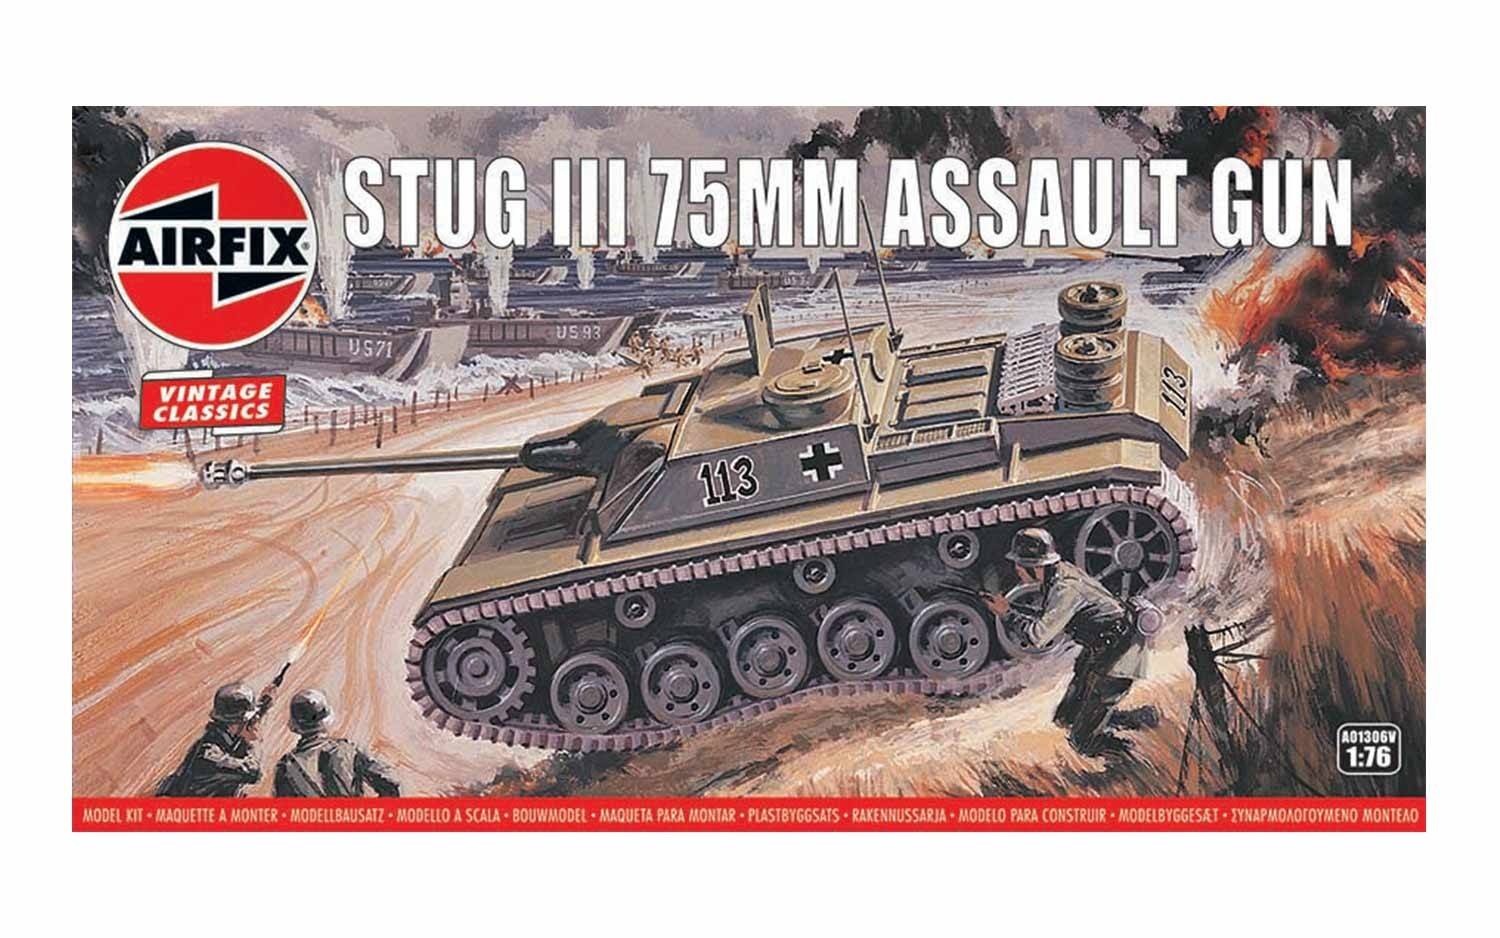 Stug III 75mm Assault Gun 1:76